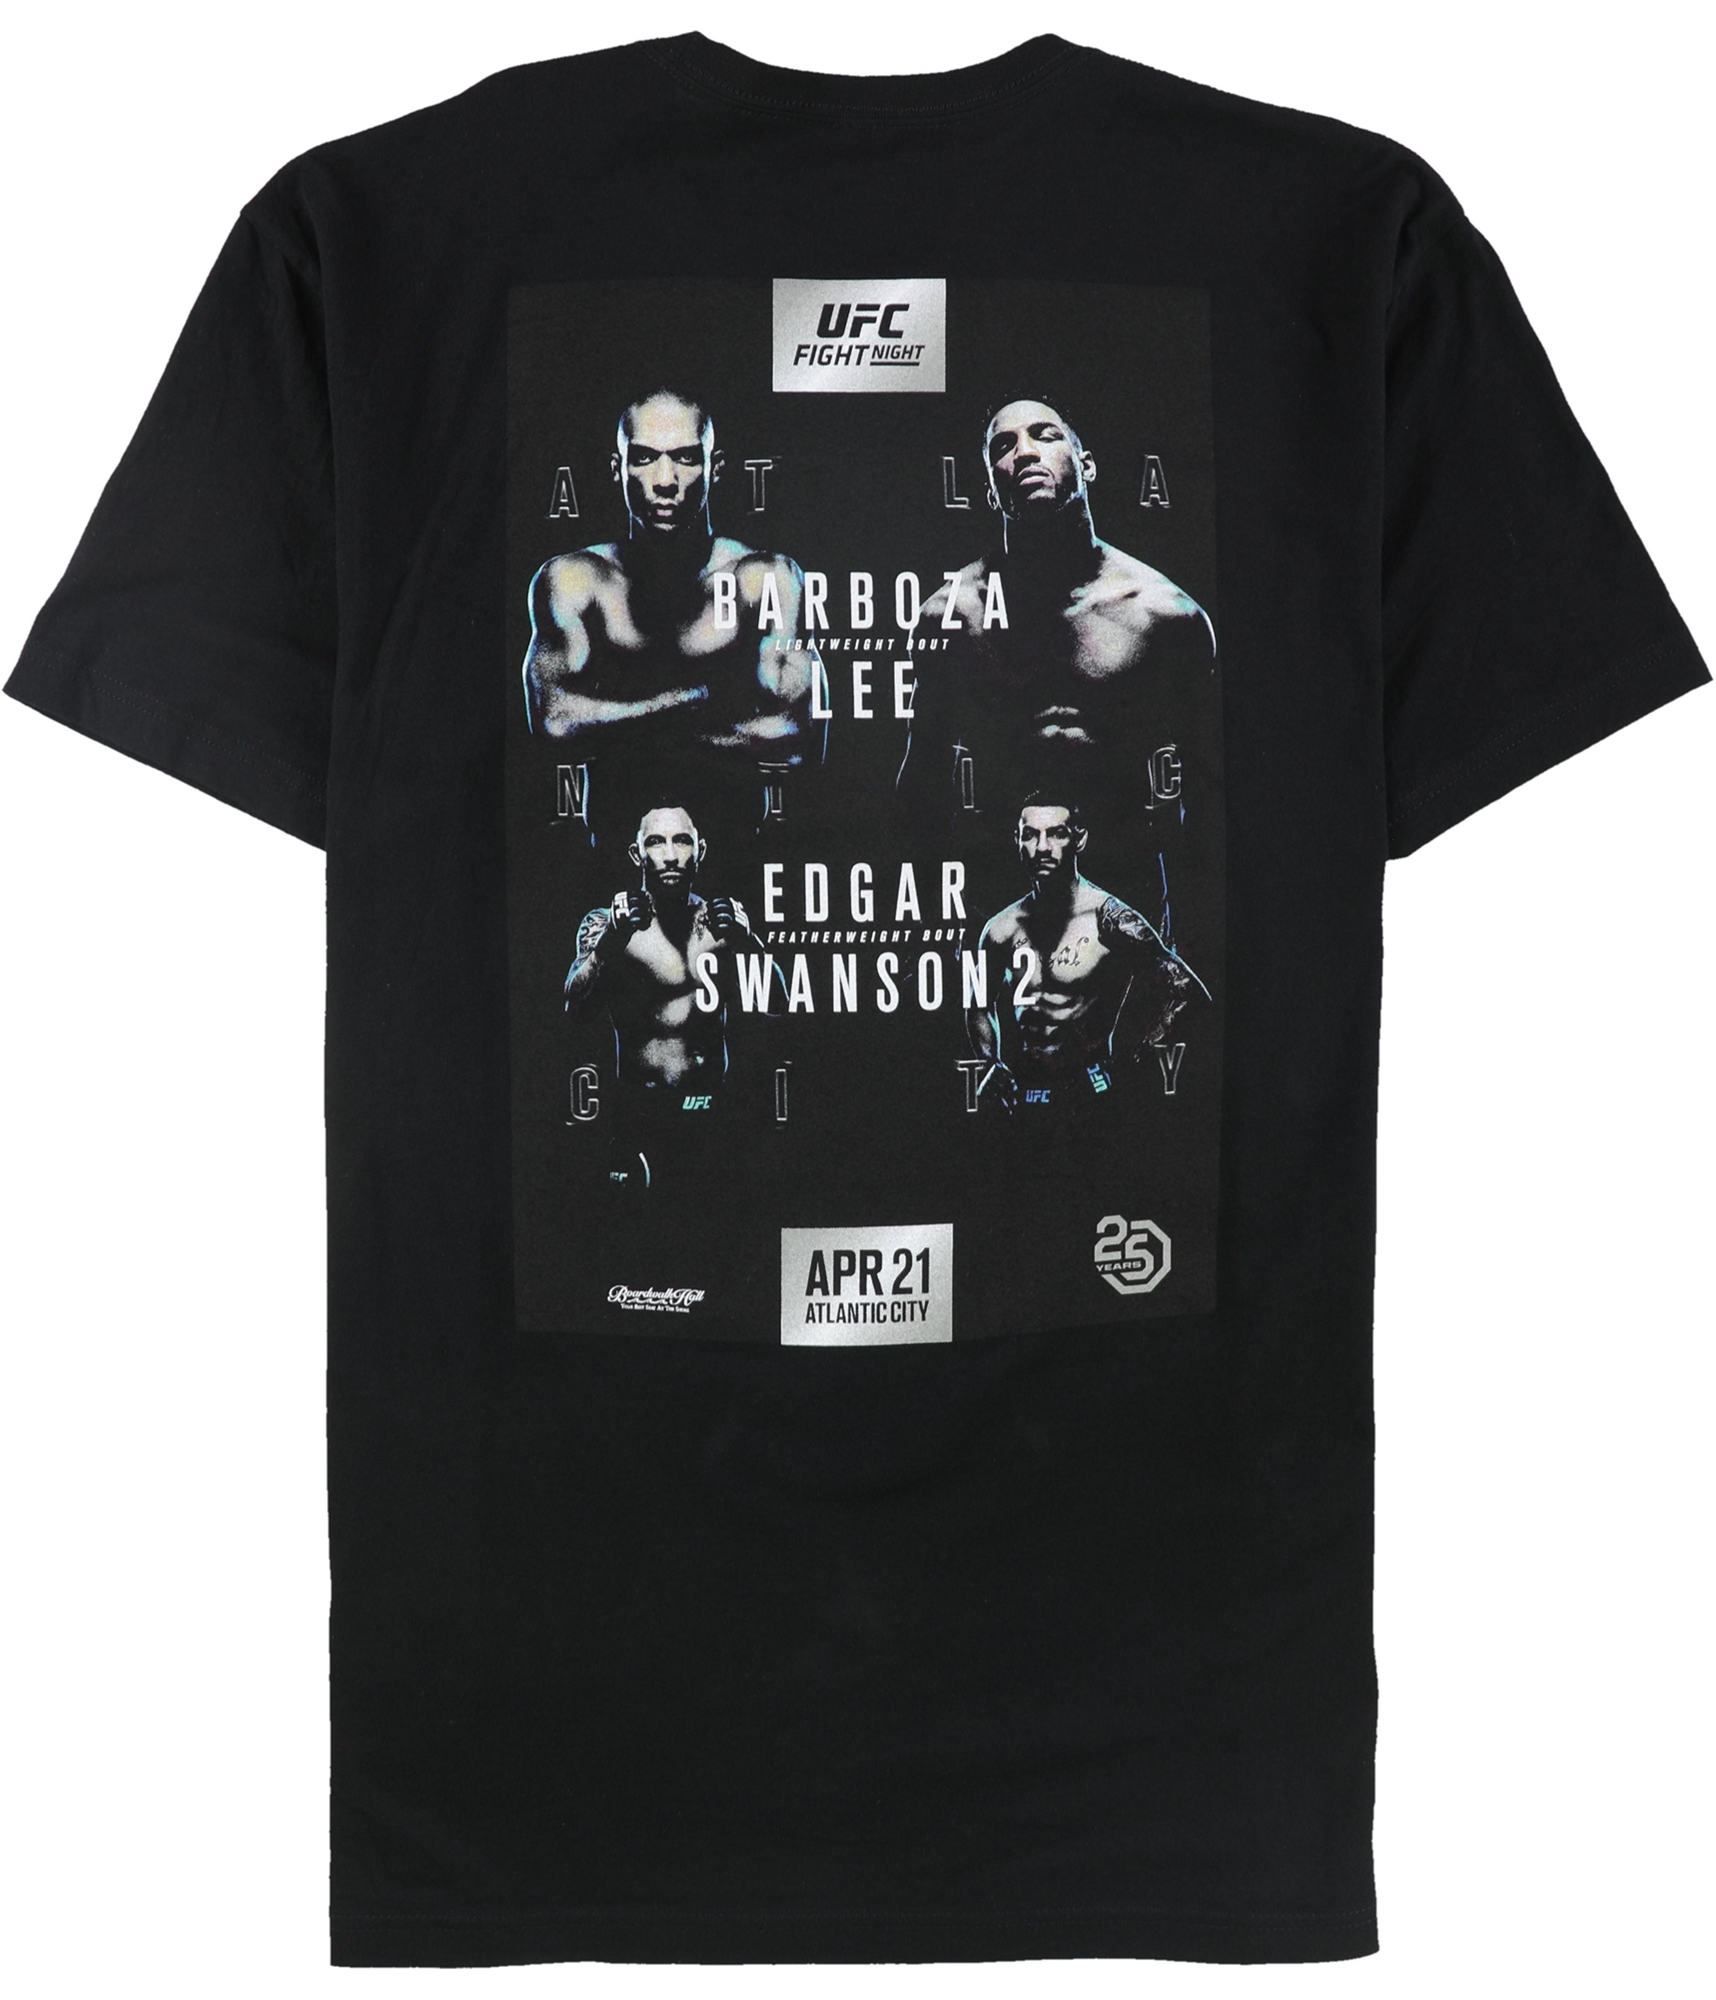 Shop All UFC Men's Merchandise & Clothing